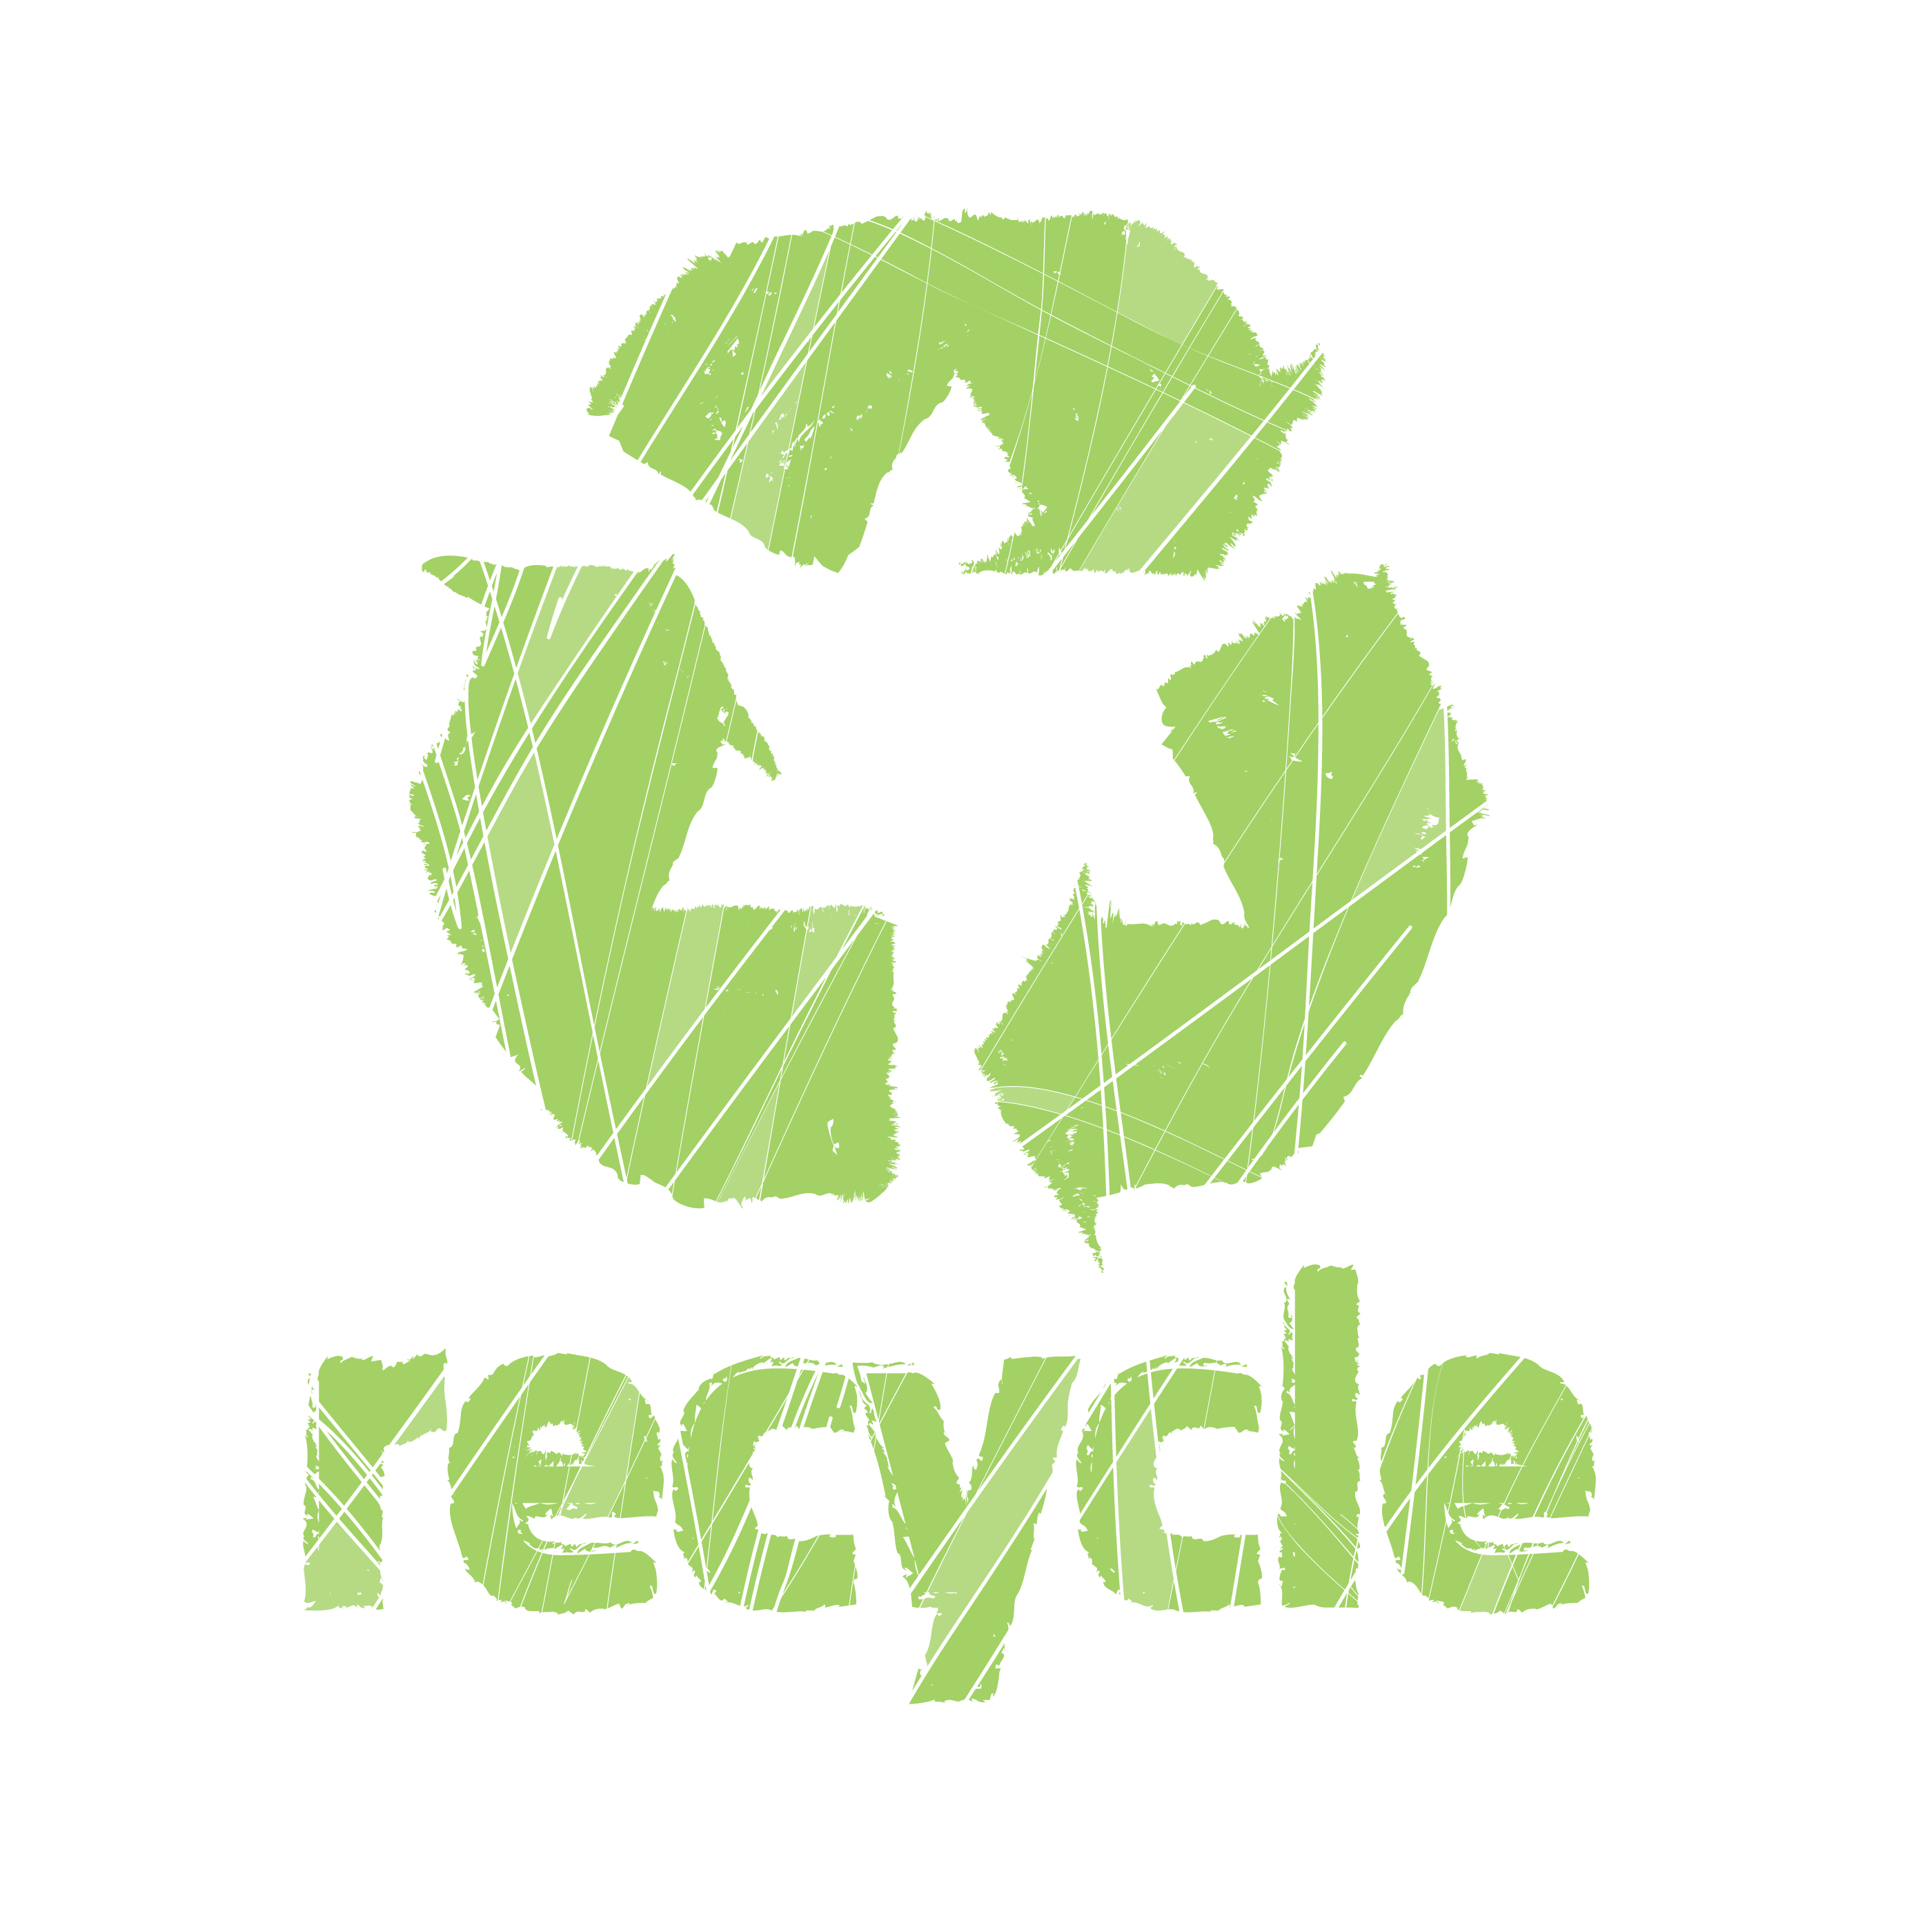 Logo van recyclen. PVC-vrij vinyl is gemaakt van recyclebaar materiaal. 